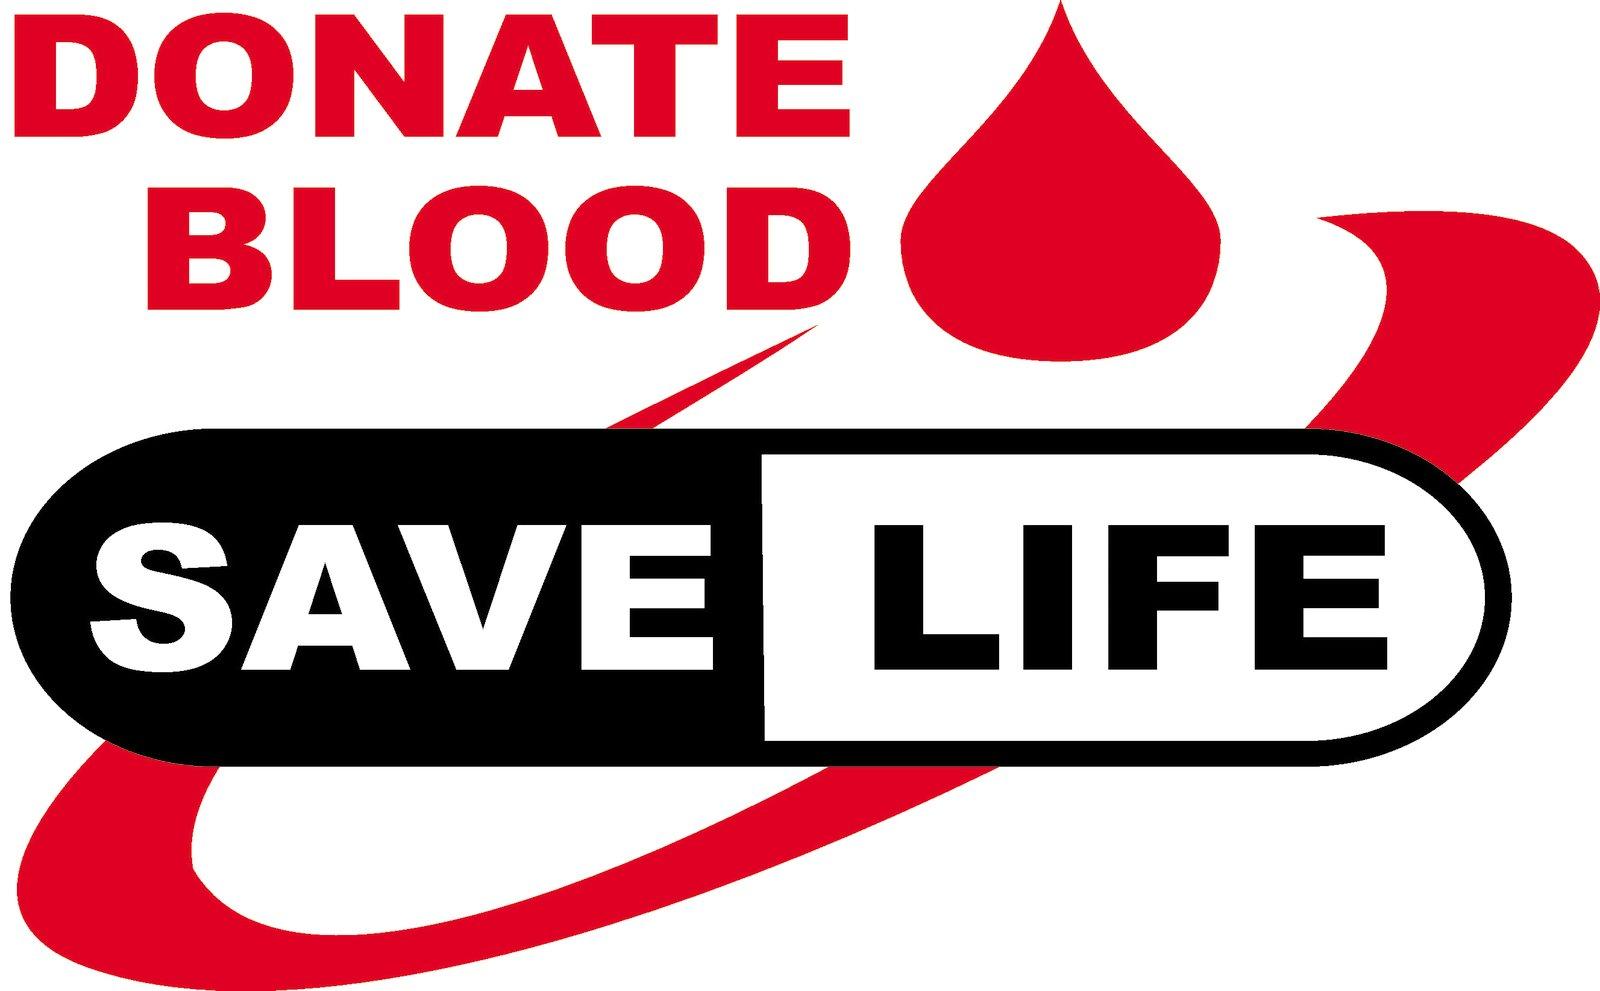 Red Cross Blood Donation Logo - ARC Annual Beth El Blood Drive Beth El Sudbury